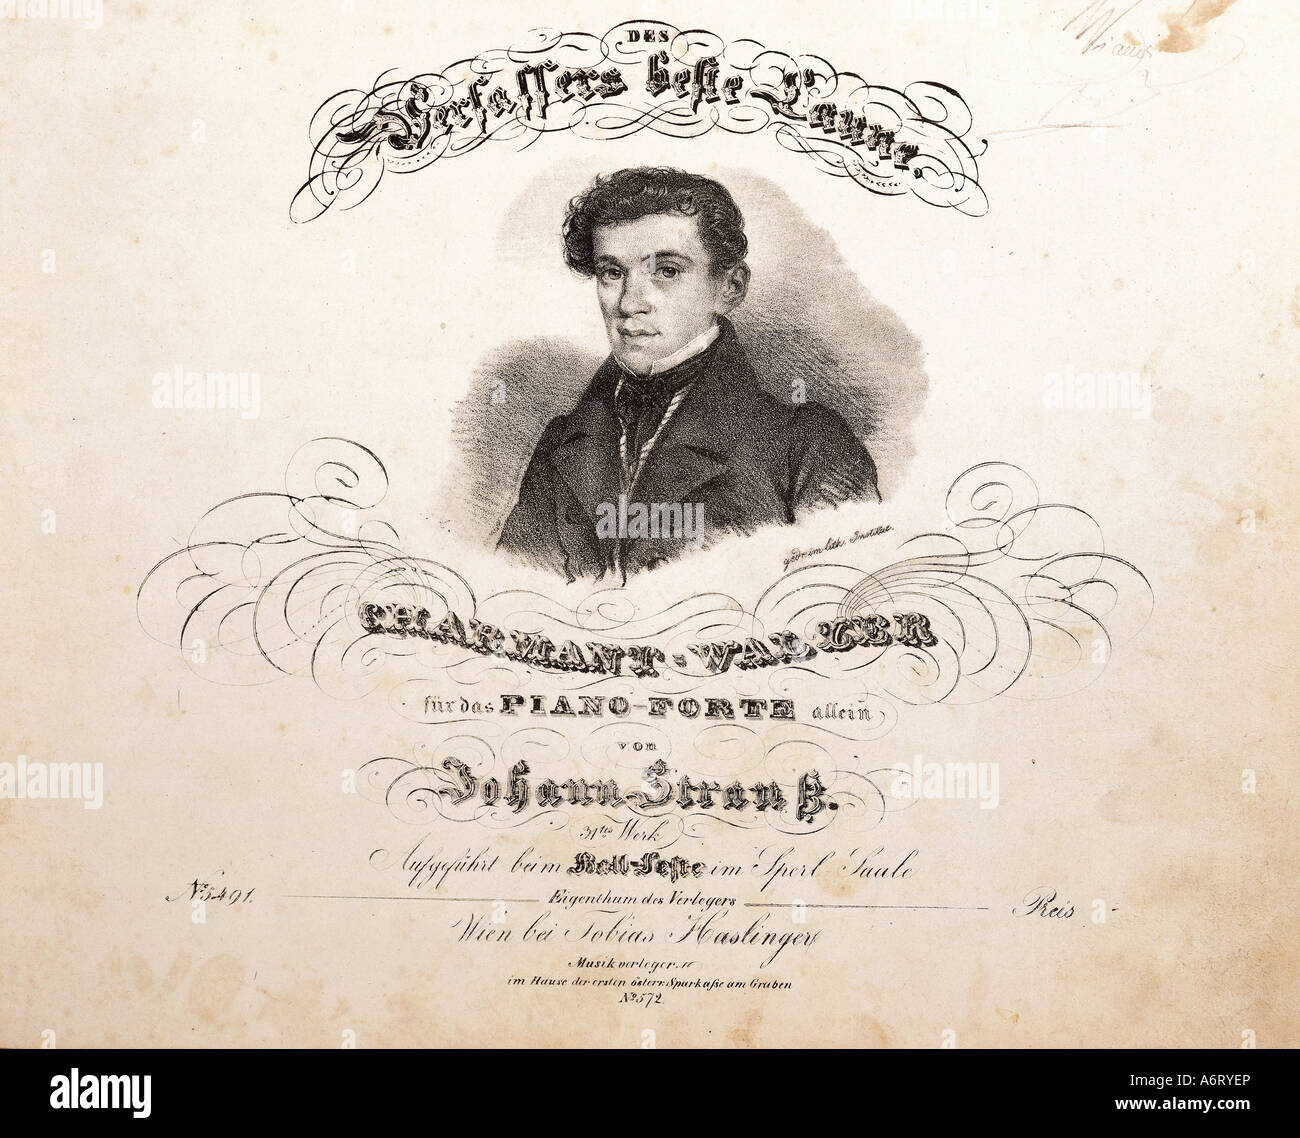 "Strauß, Johann (Vater), 14.3. 1804 - 25.9.1849, Austran Komponist, Porträt, Lithographie, Titel, "Charmant-Walzer", herausgegeben von Stockfoto